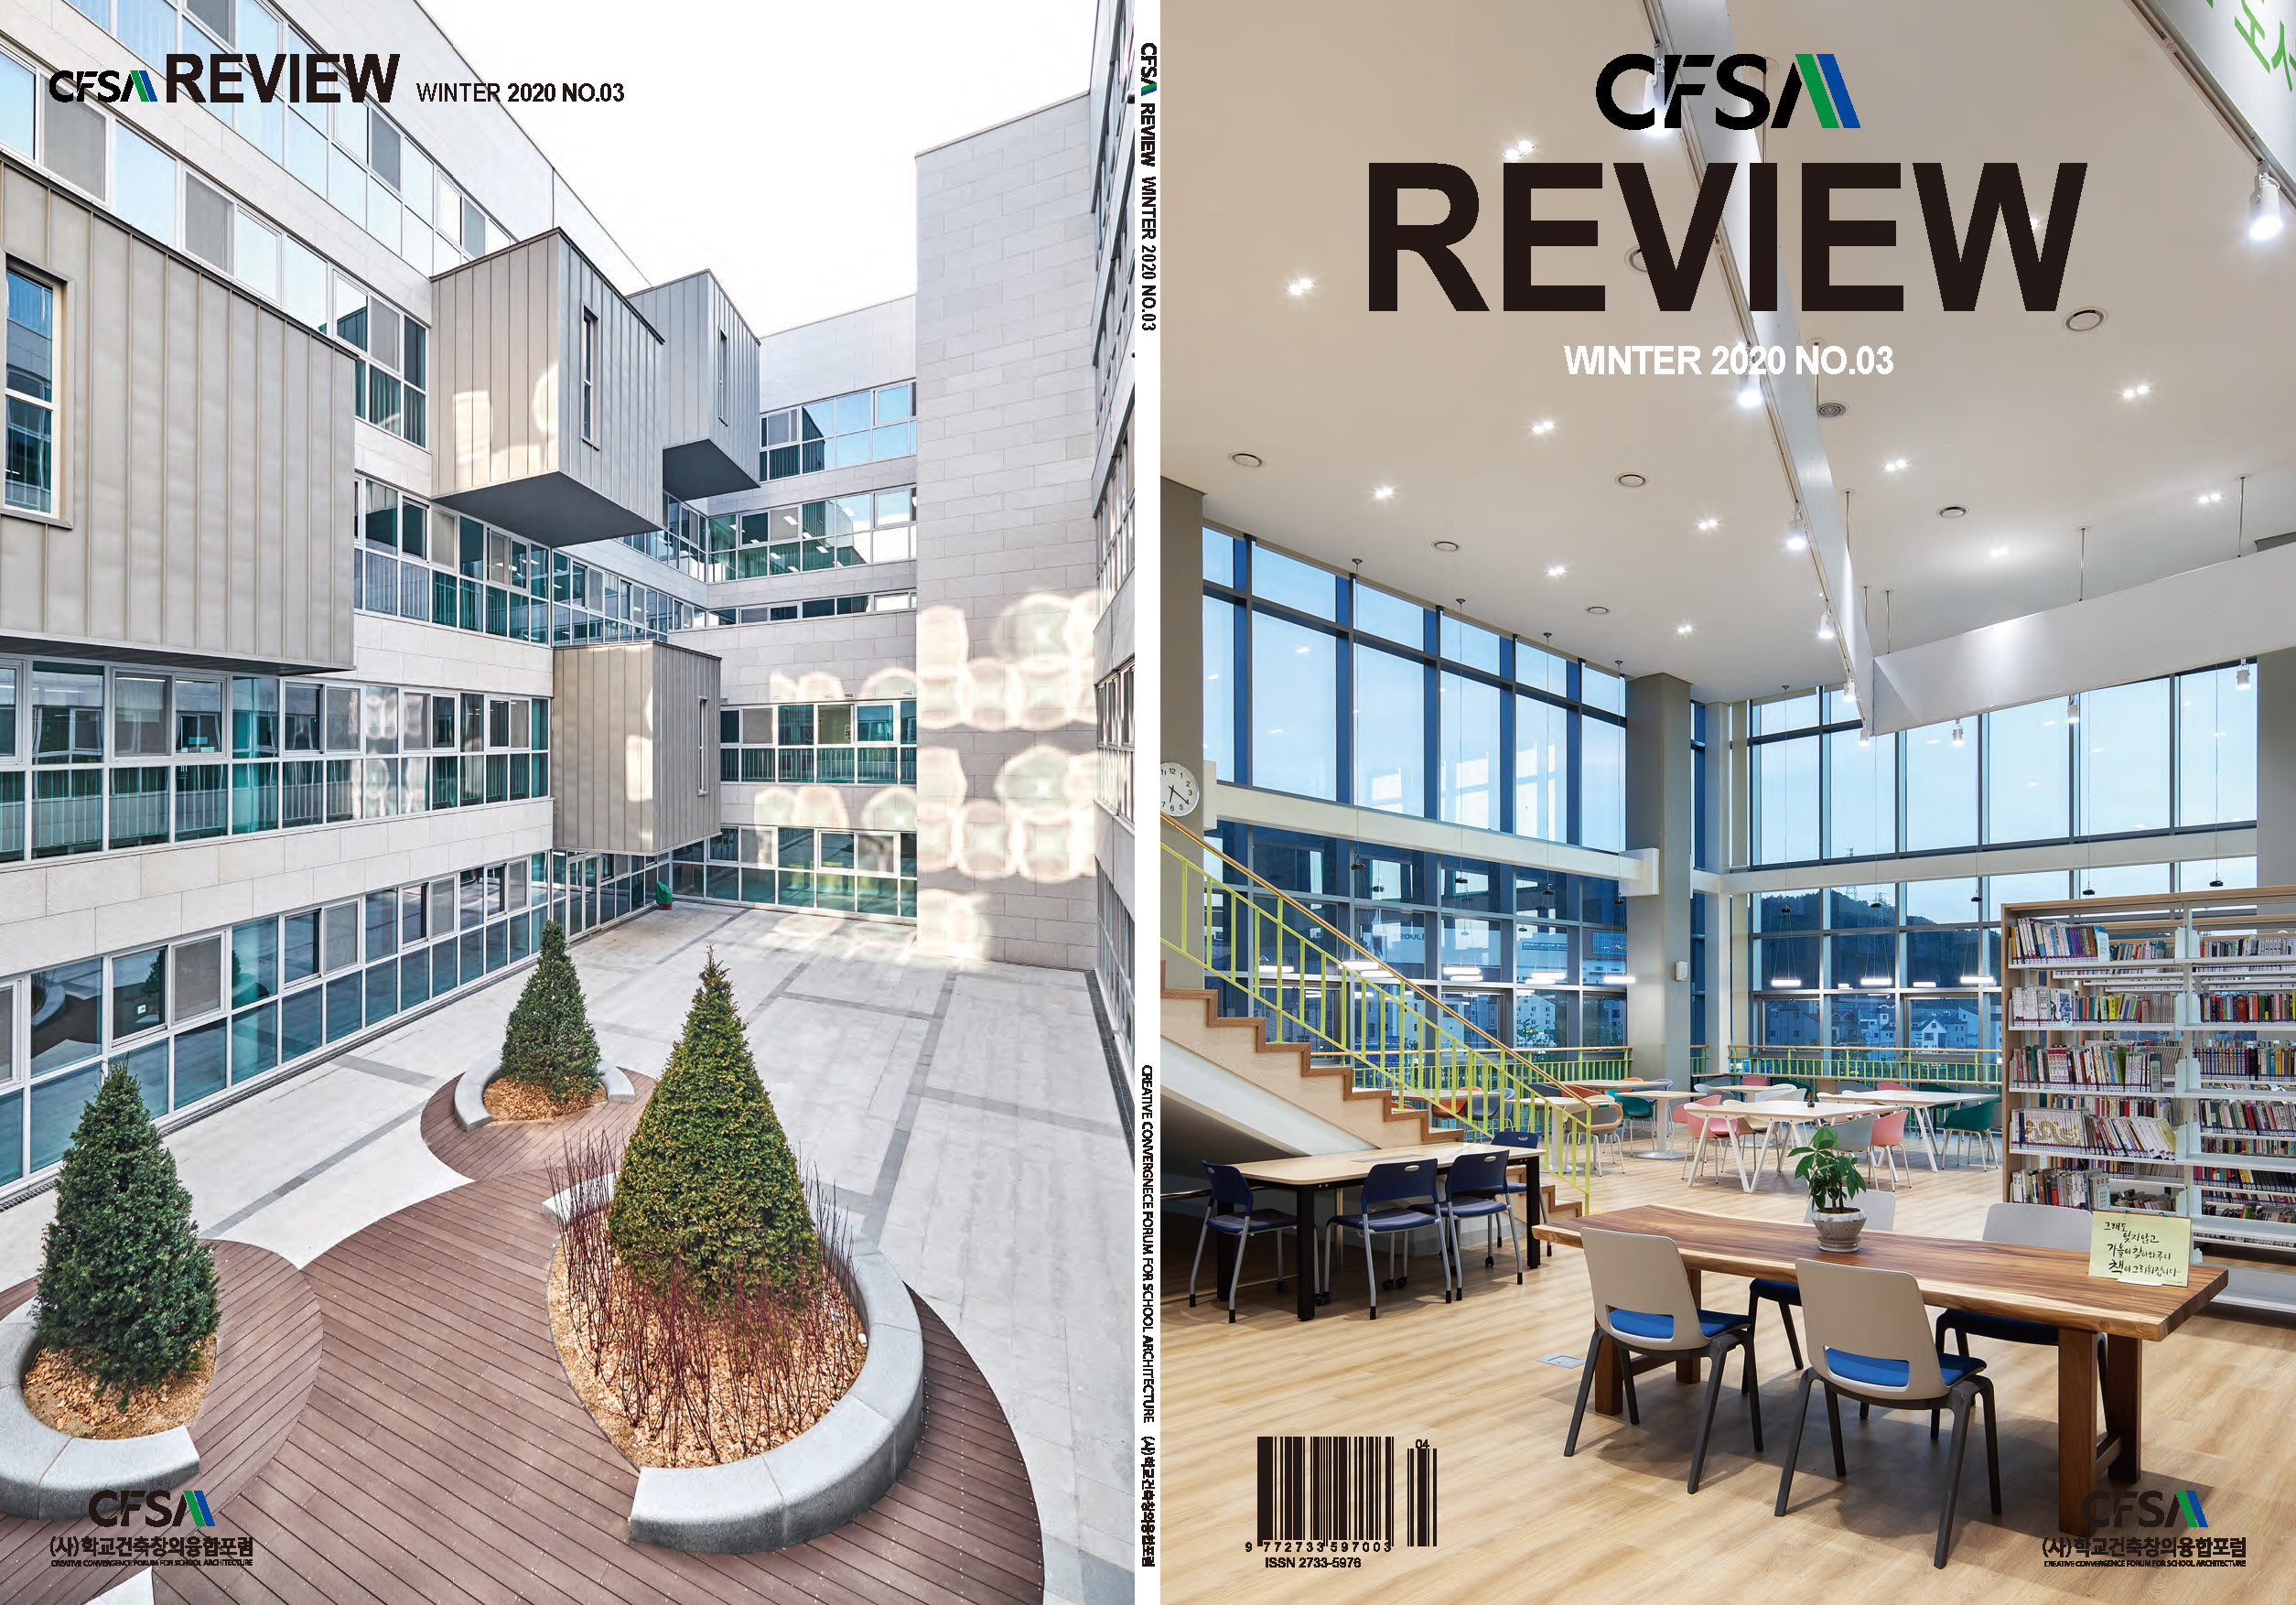 CFSA REVIEW WINTER 2020 NO.03